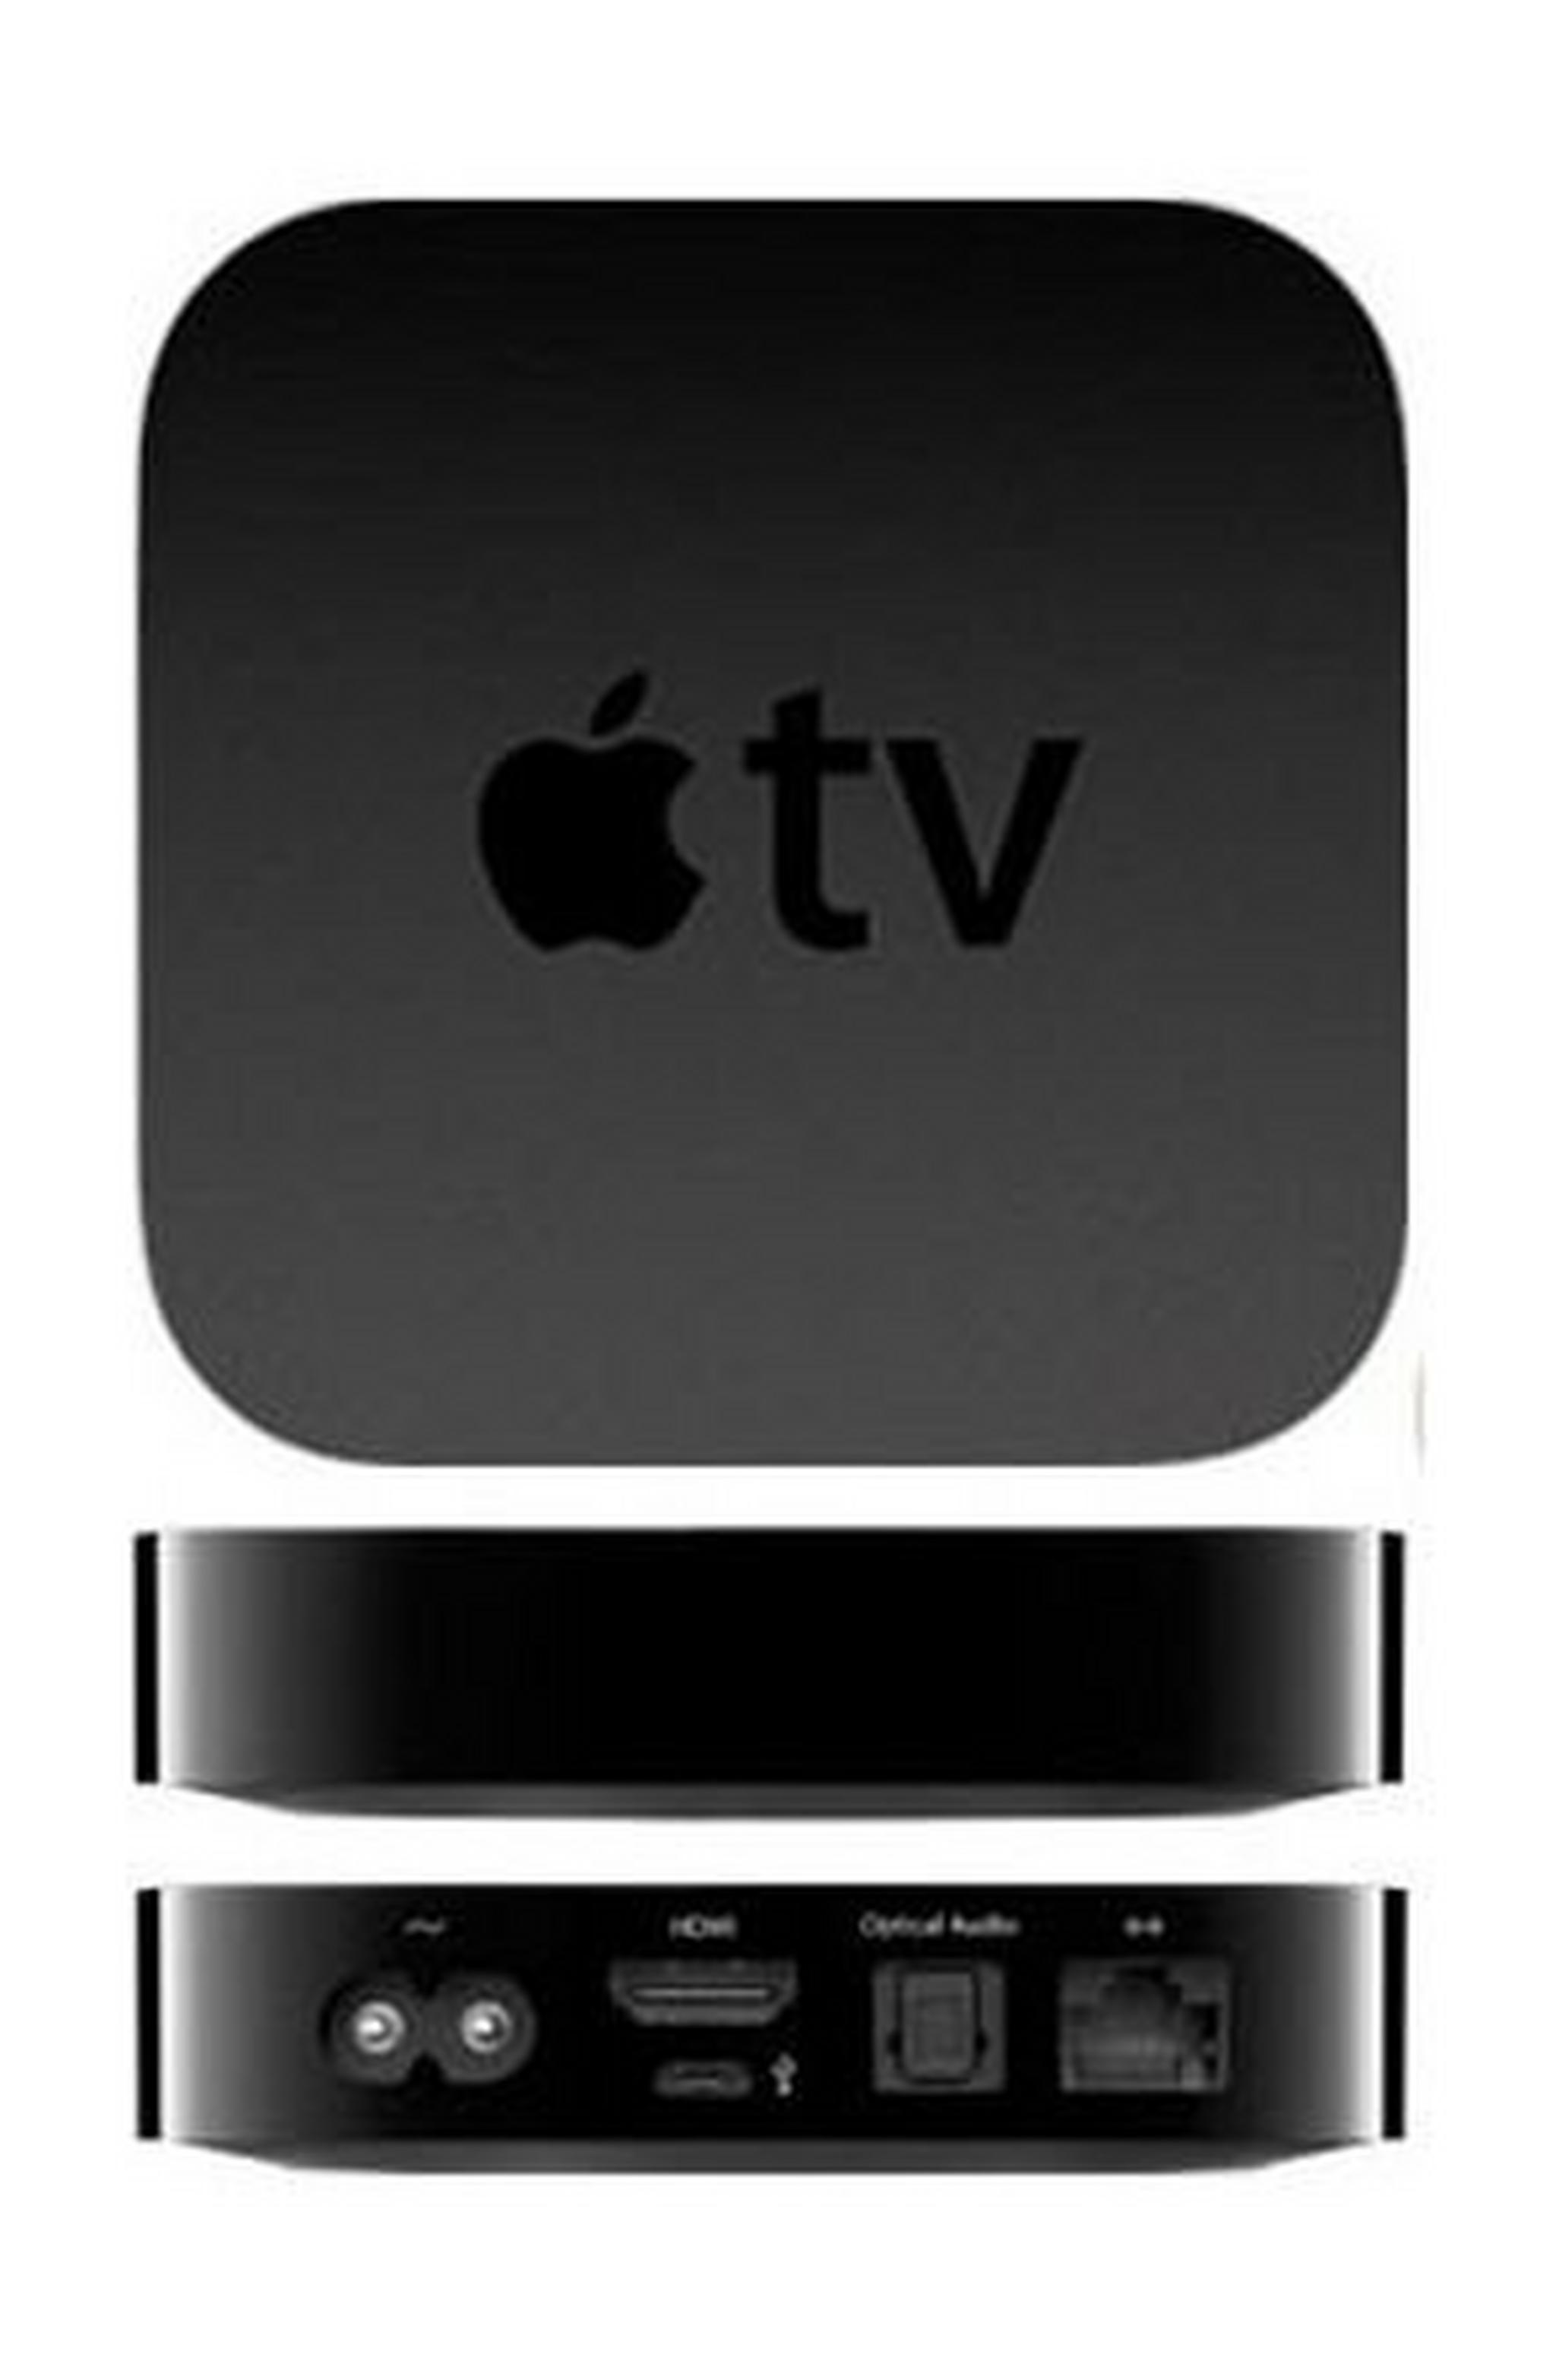 Apple TV 3rd Generation (1080p) MD199LL